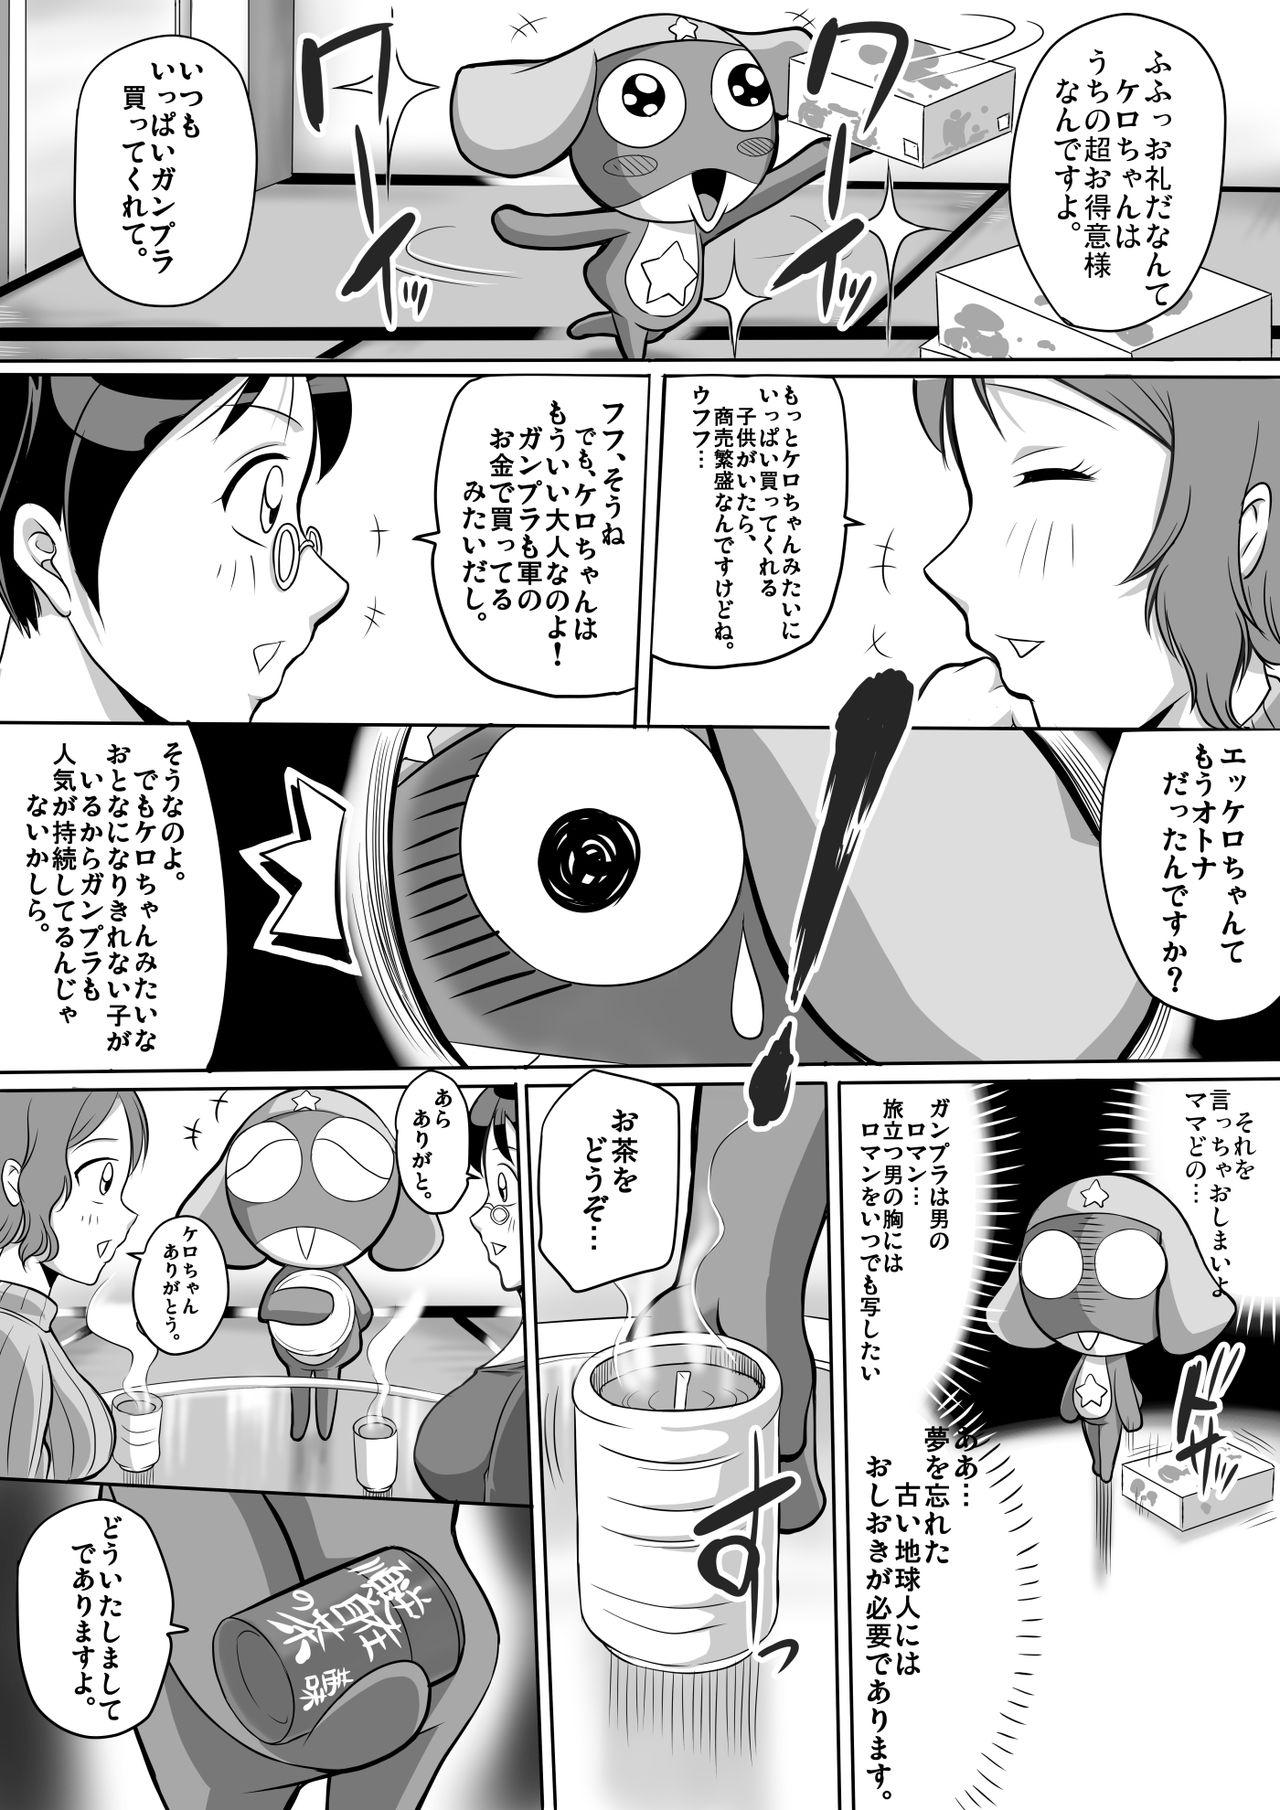 Twistys Autumn no Ta wa, Taputapu no Ta!! - Gundam build fighters Gundam Keroro gunsou | sgt. frog De Quatro - Page 4